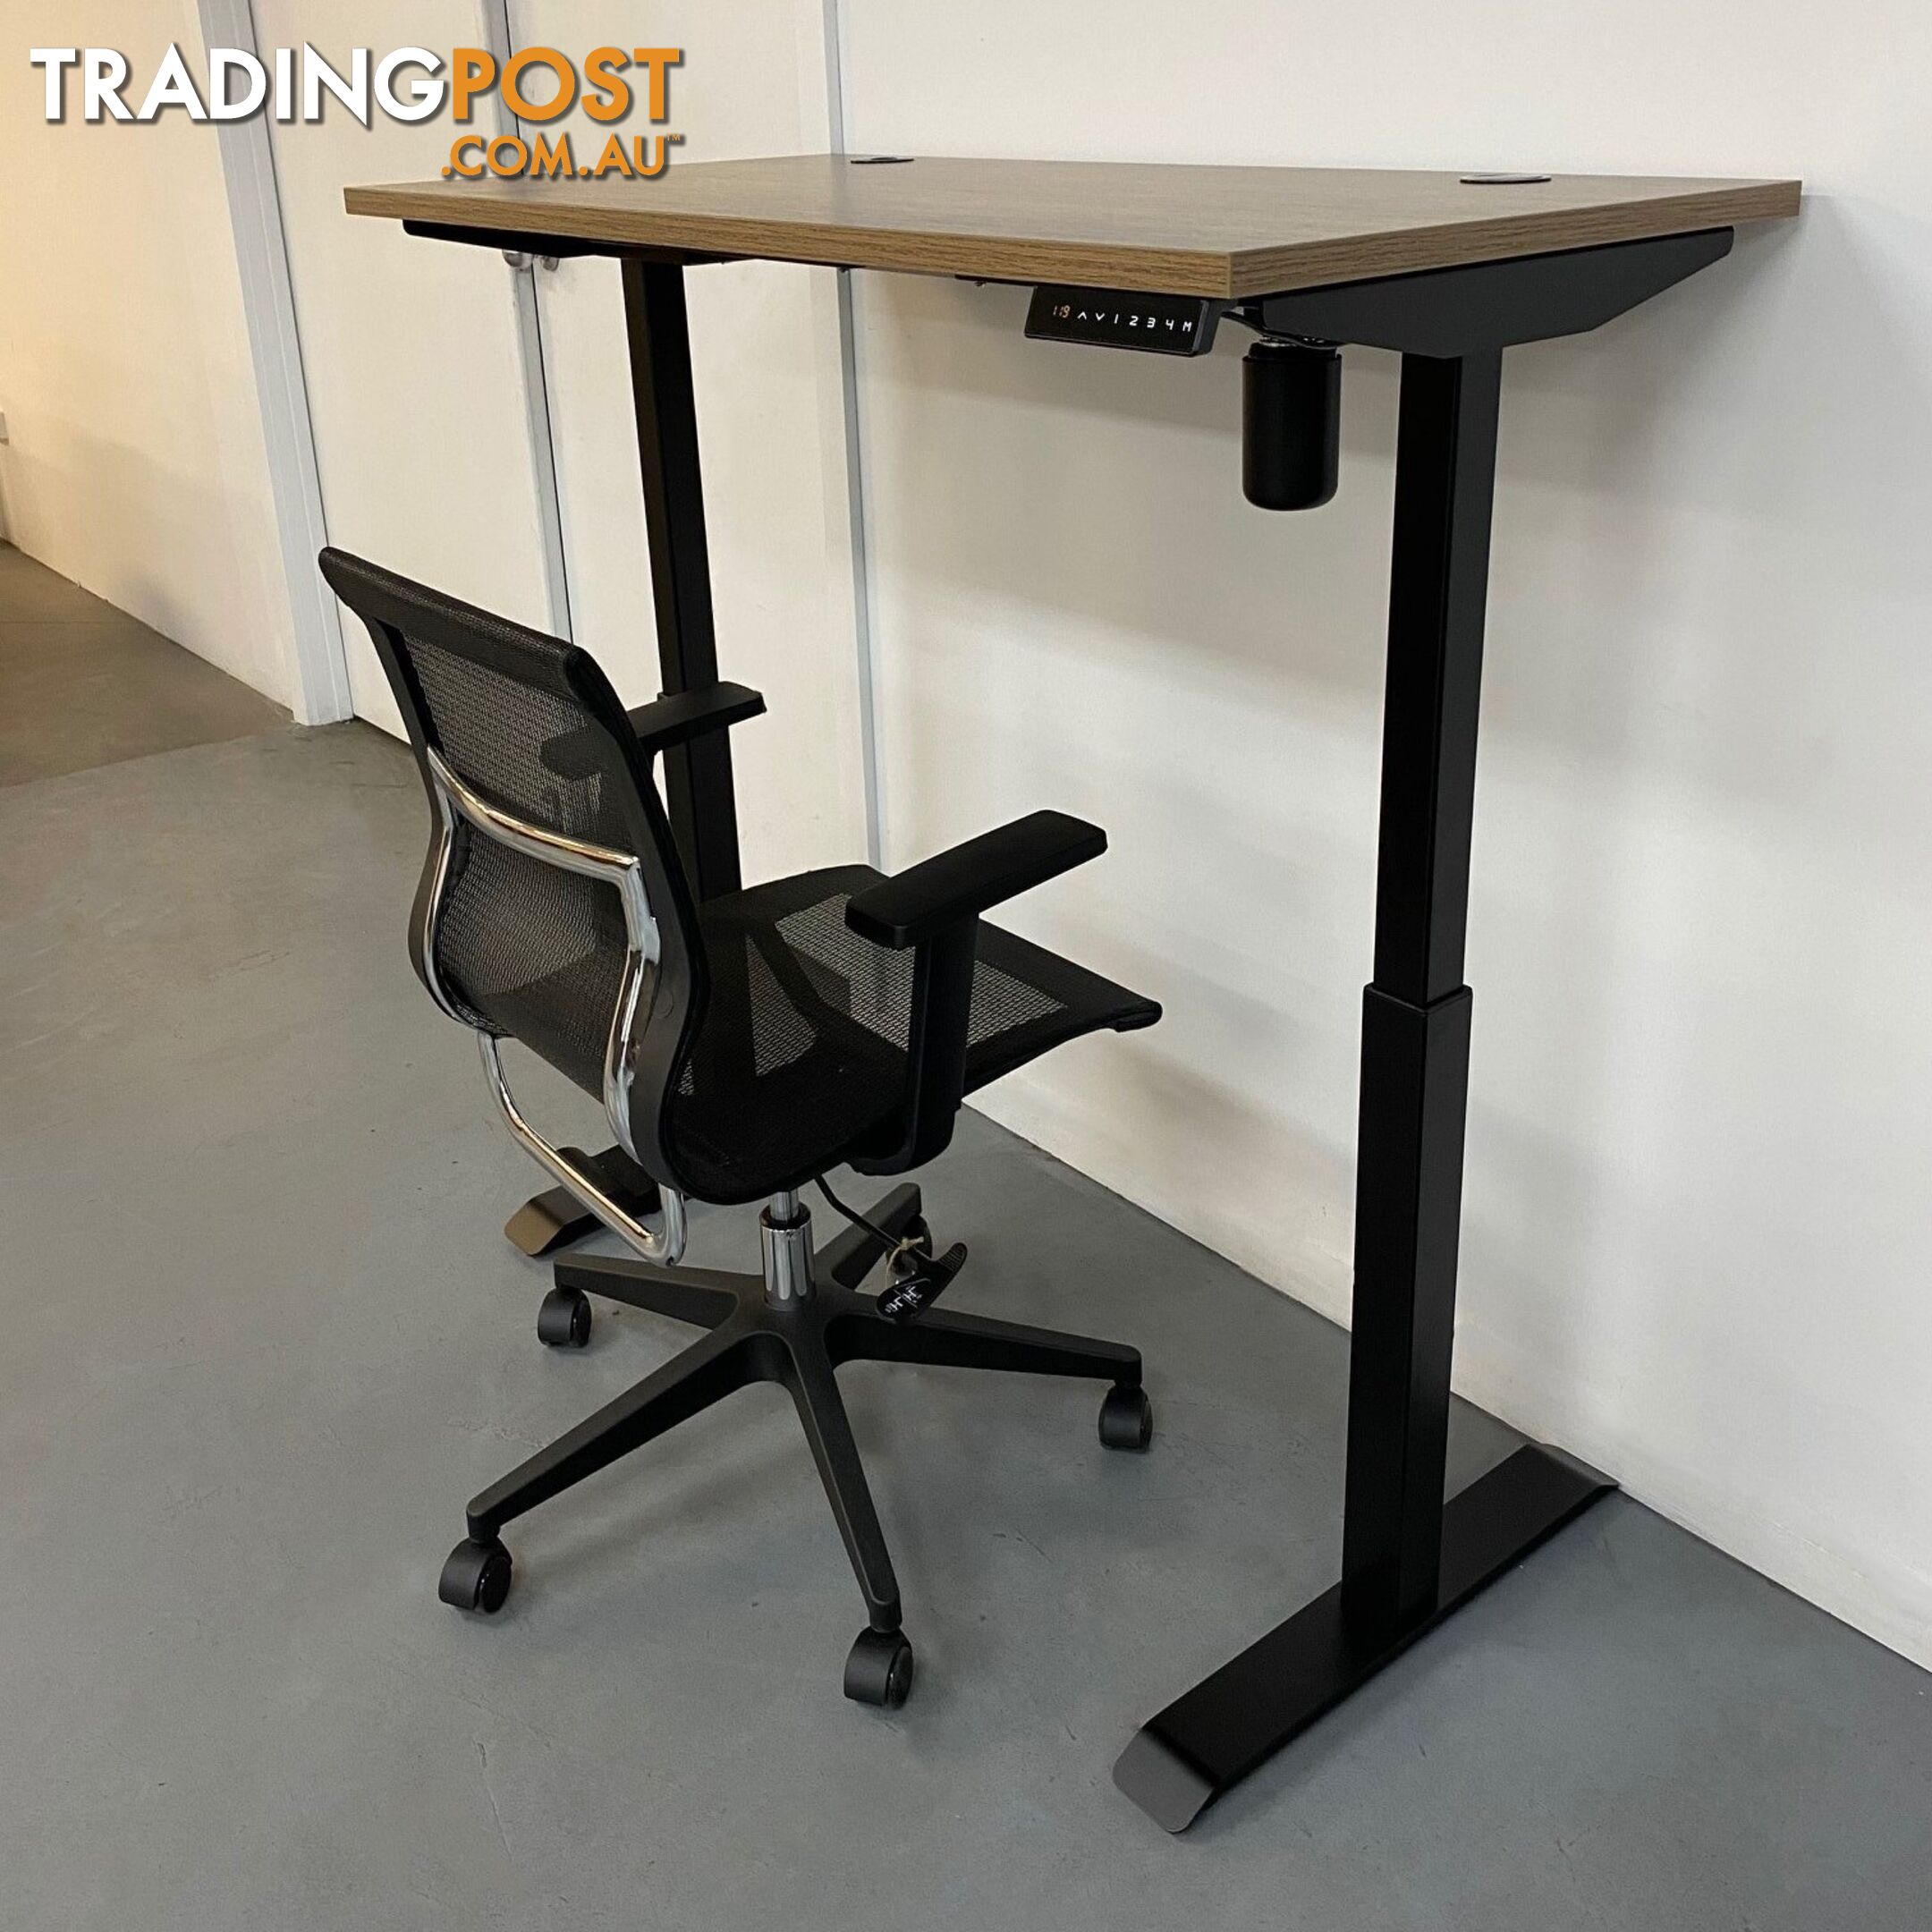 ALVIS Standing Desk with Lift 1.5M - Warm Oak & Black - WF-LD02 - 9334719011417